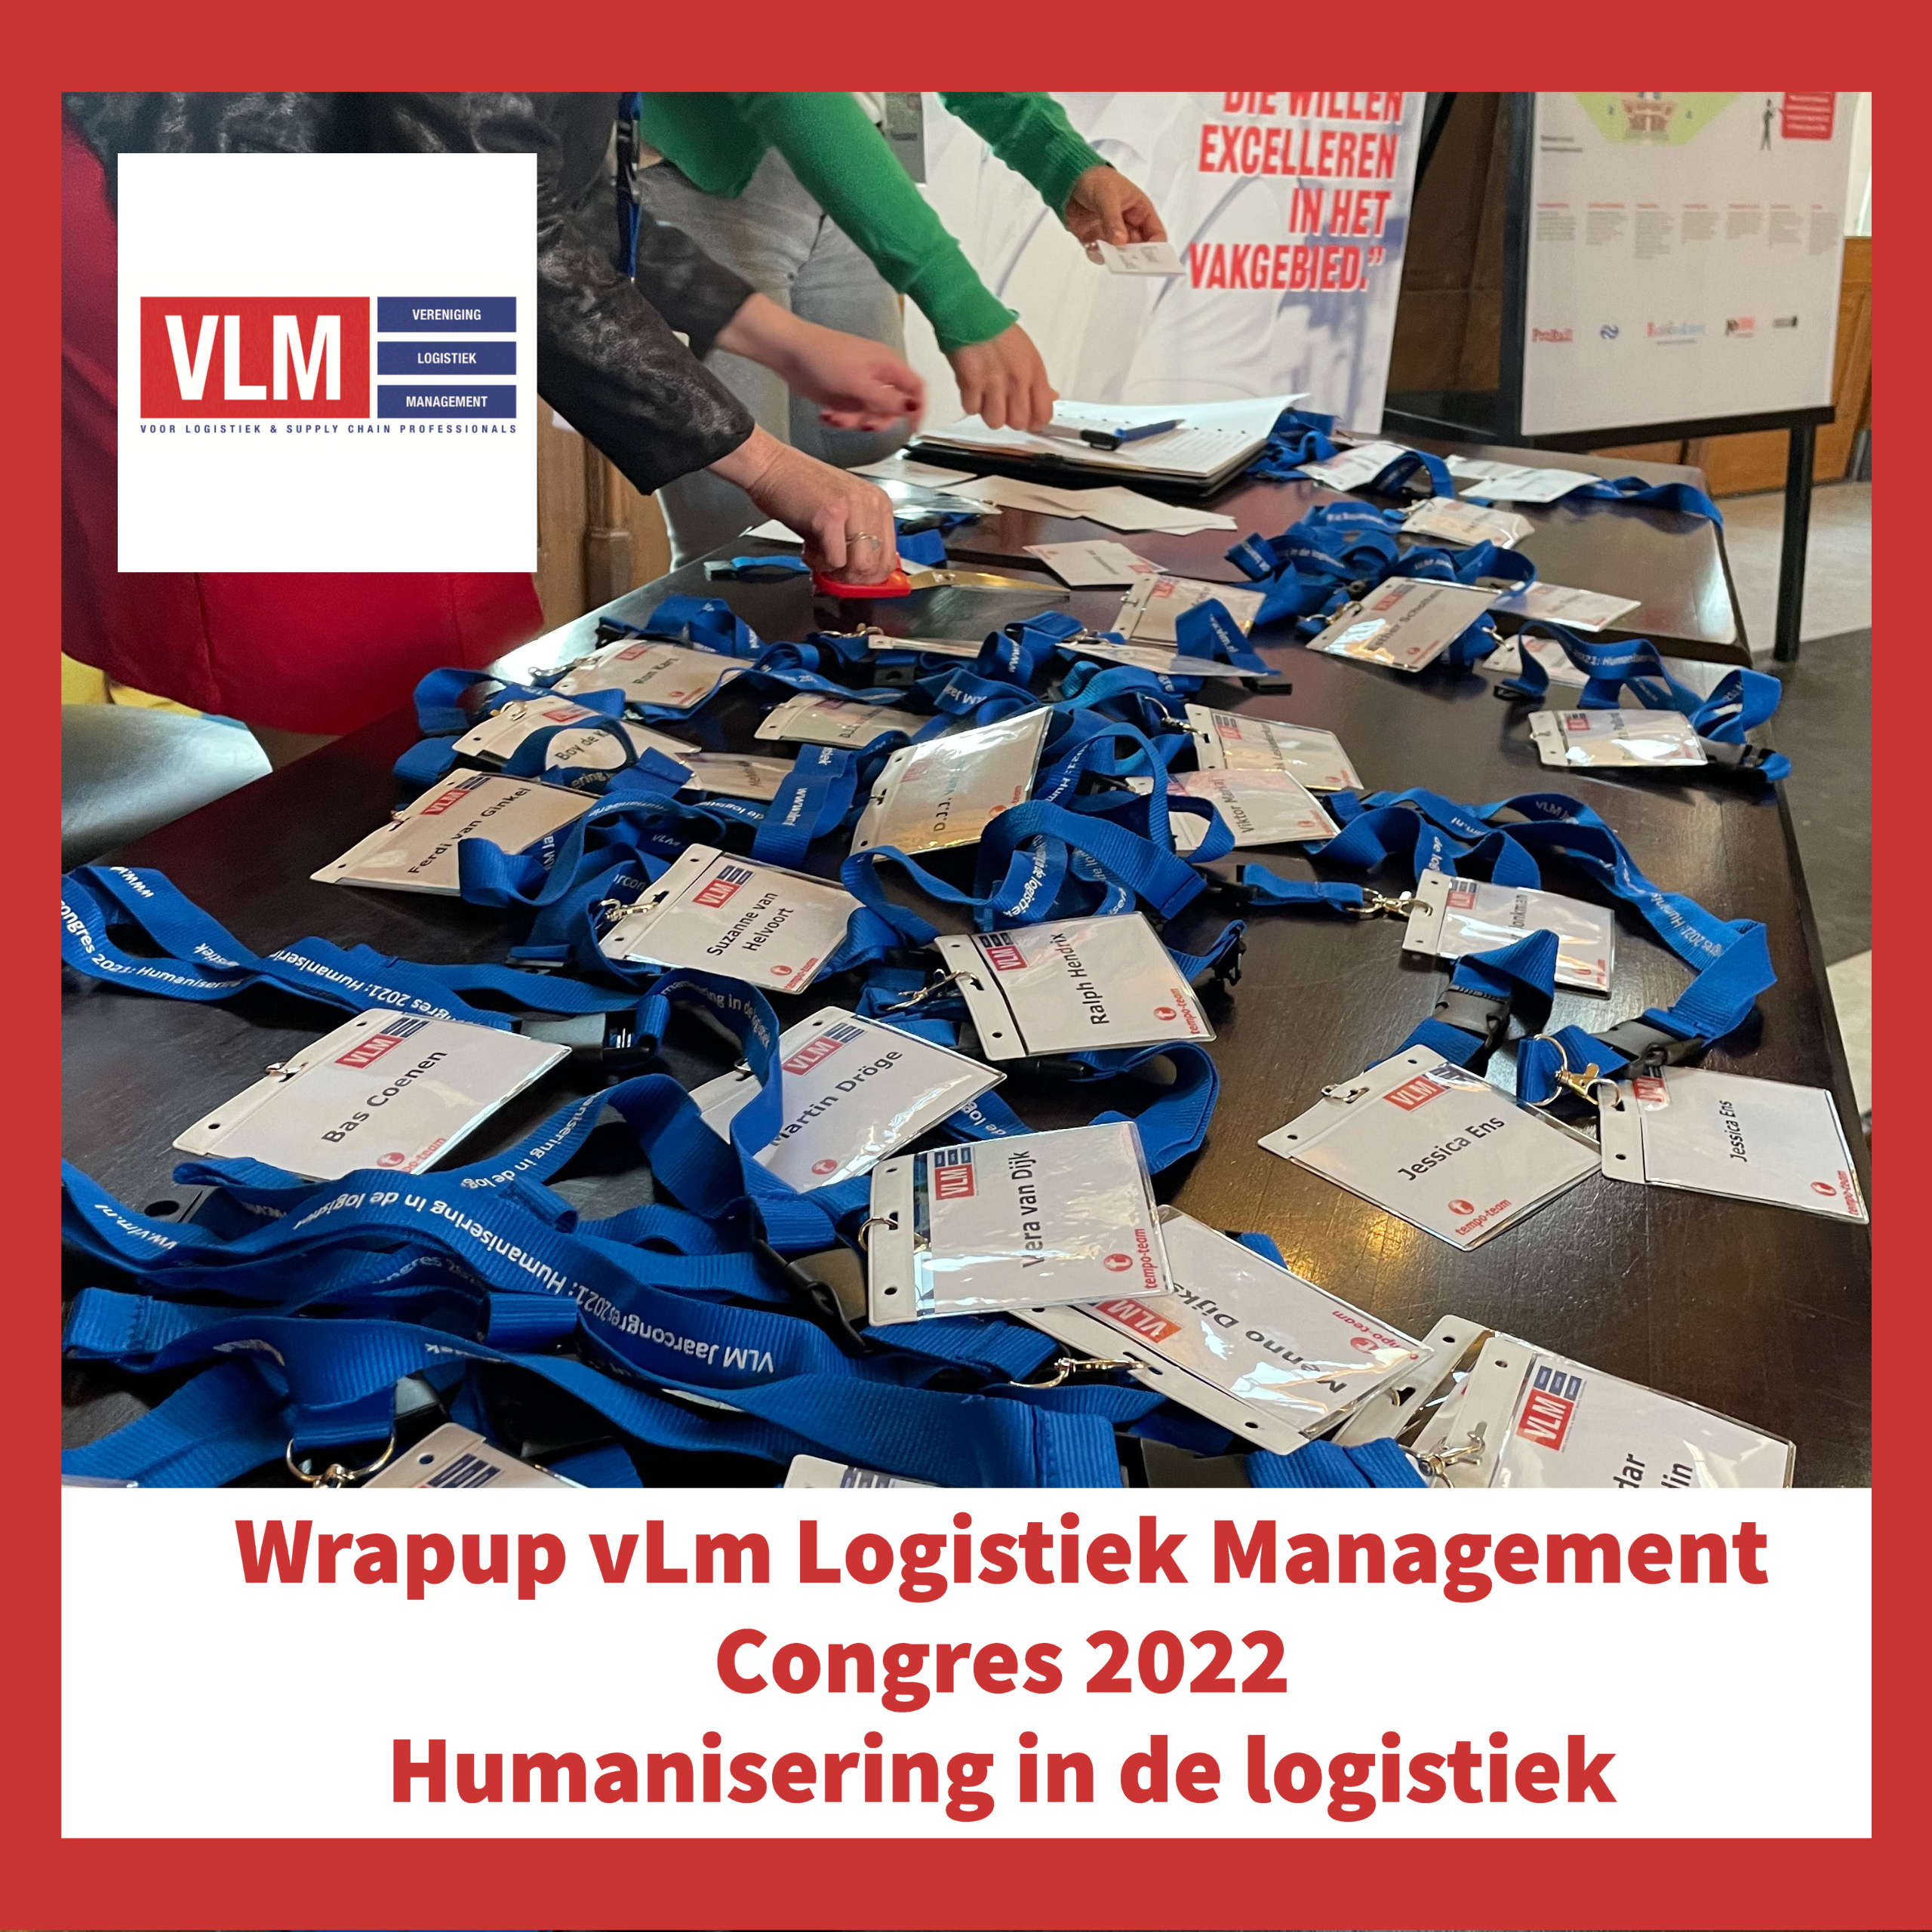 Wrapup vLm Logistiek Management Congres 9 maart 2022 Humanisering in de logistiek